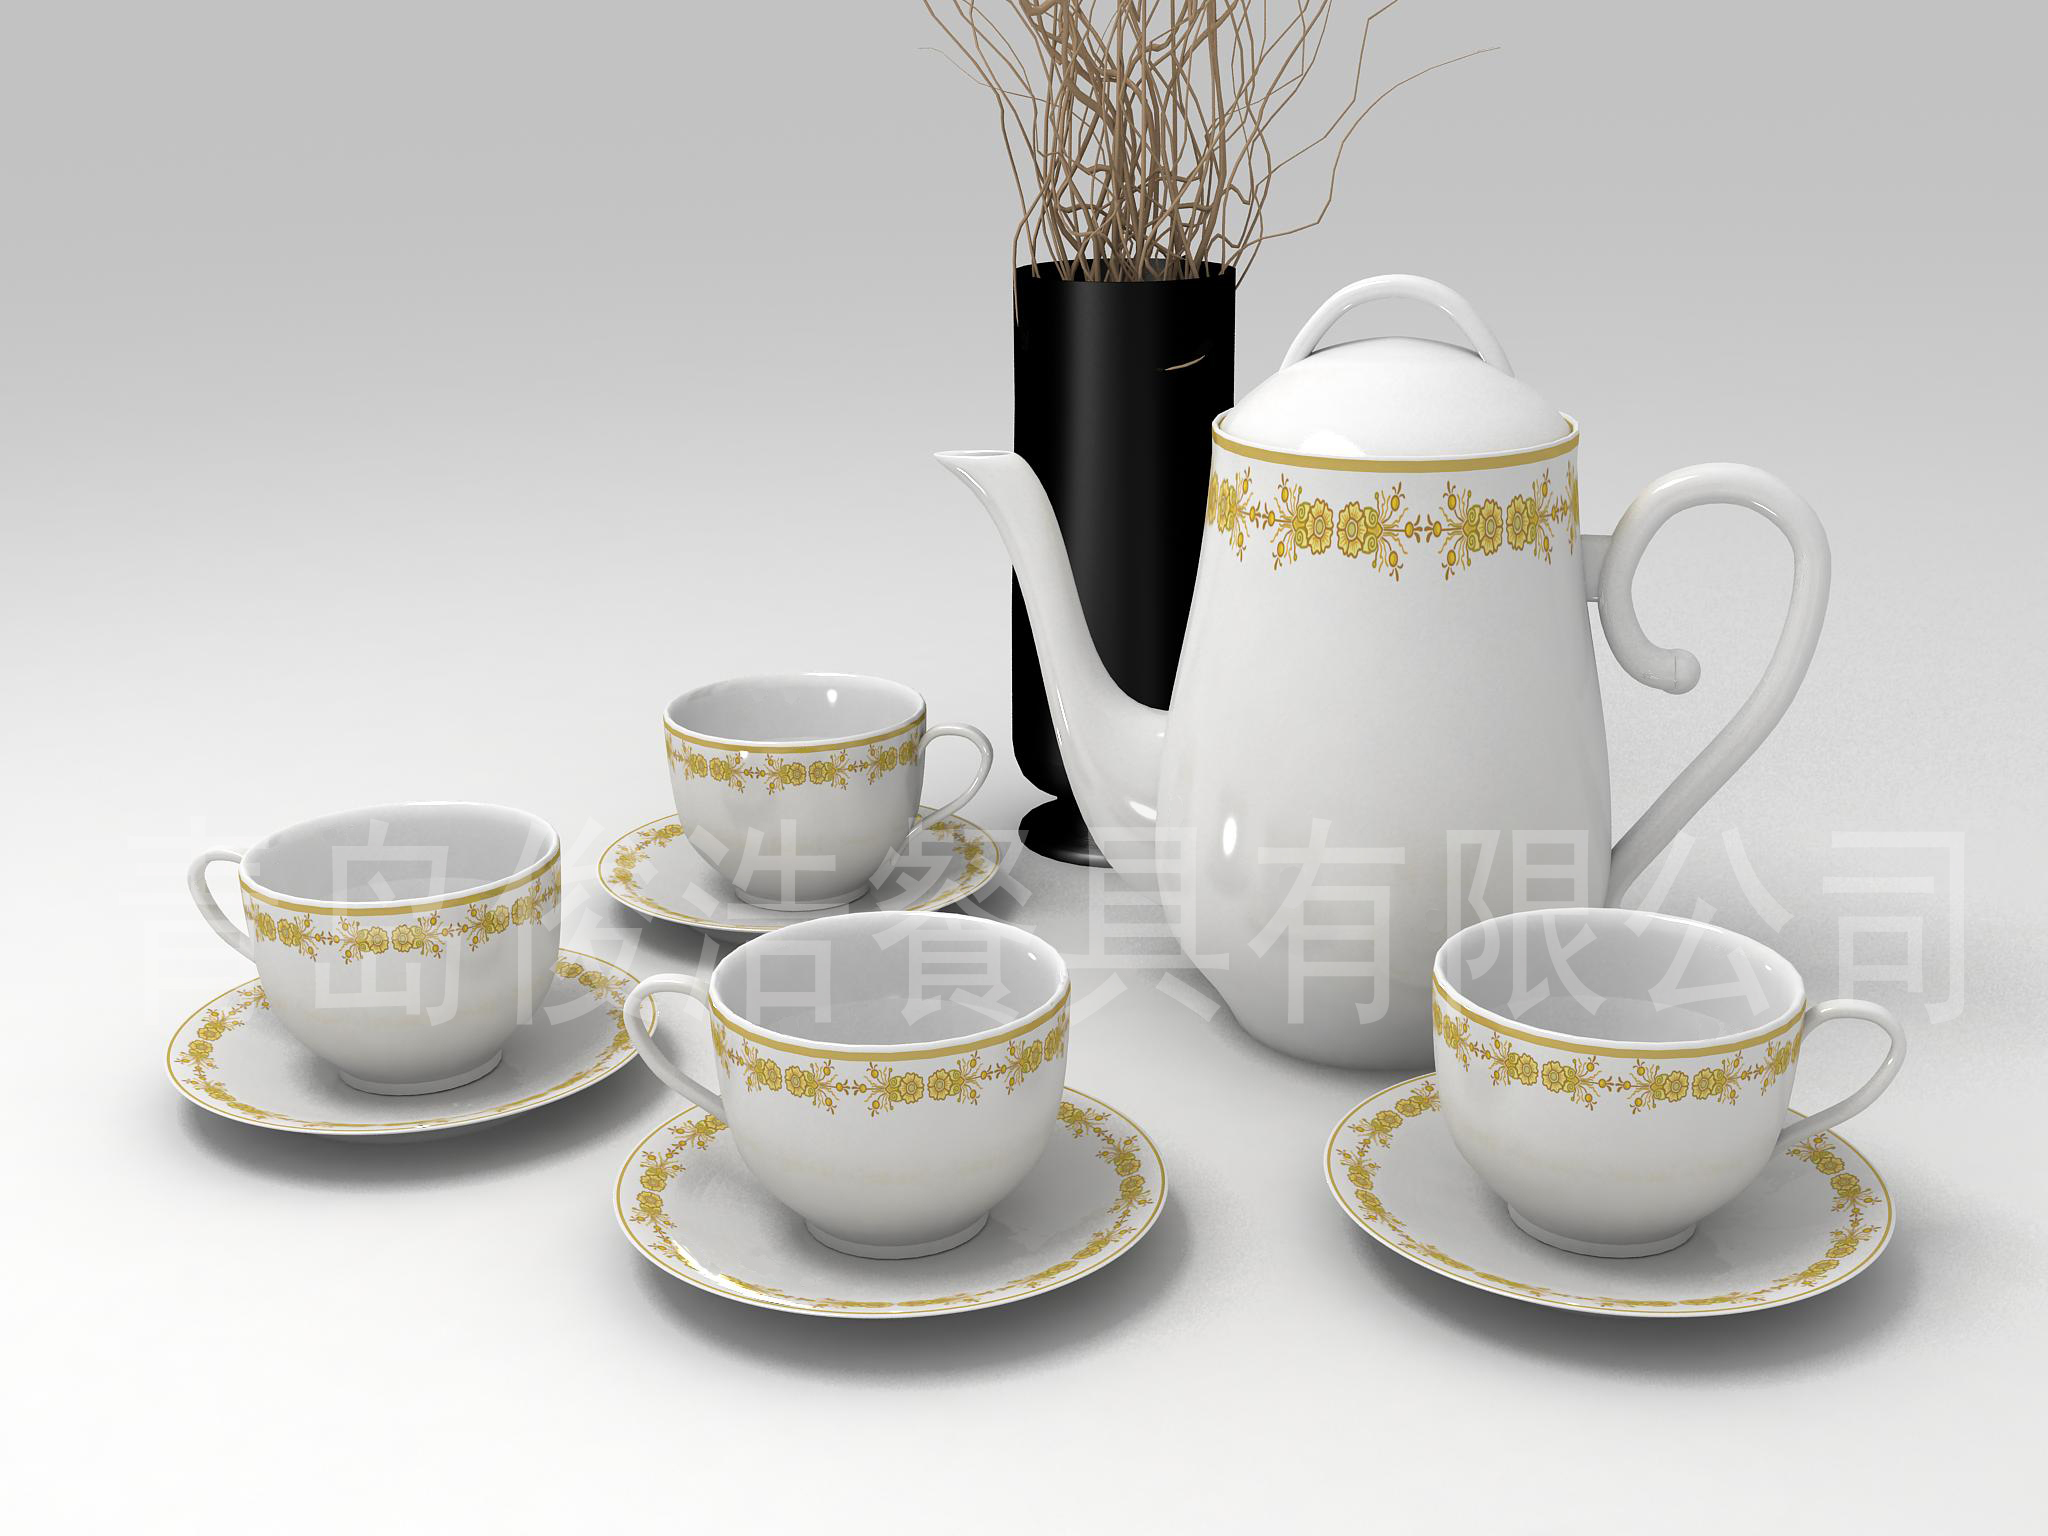 3 家用餐具;酒店餐具;家用茶具;精美礼品;咖啡杯;厨房陶瓷用具; 青岛佳艺陶瓷有限公司